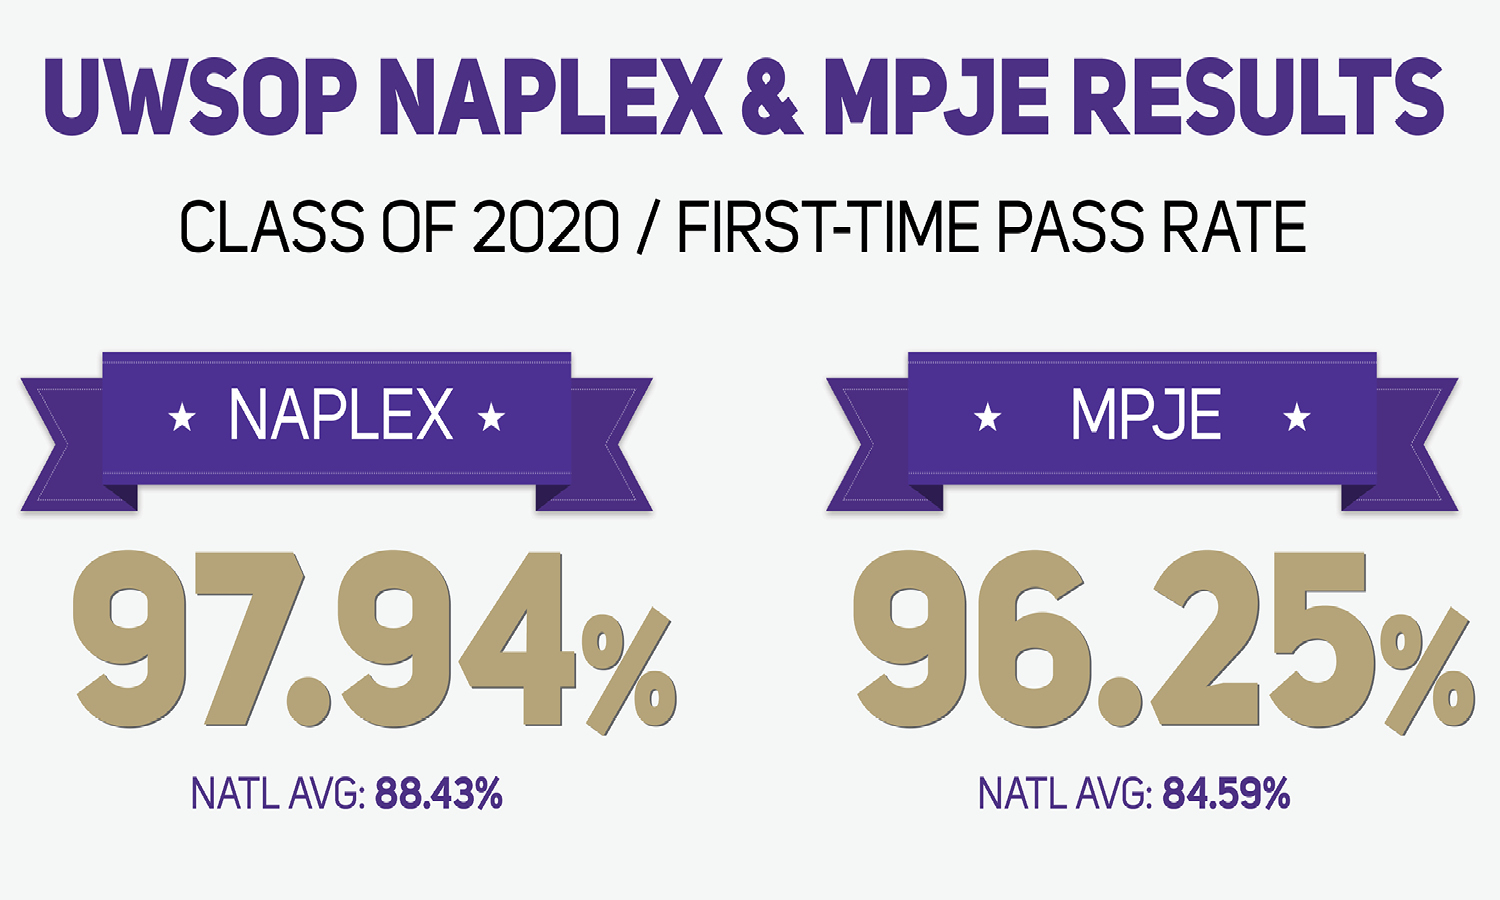 SOP Class of 2020 Has Stellar Showing In Latest NAPLEX & MPJE Results